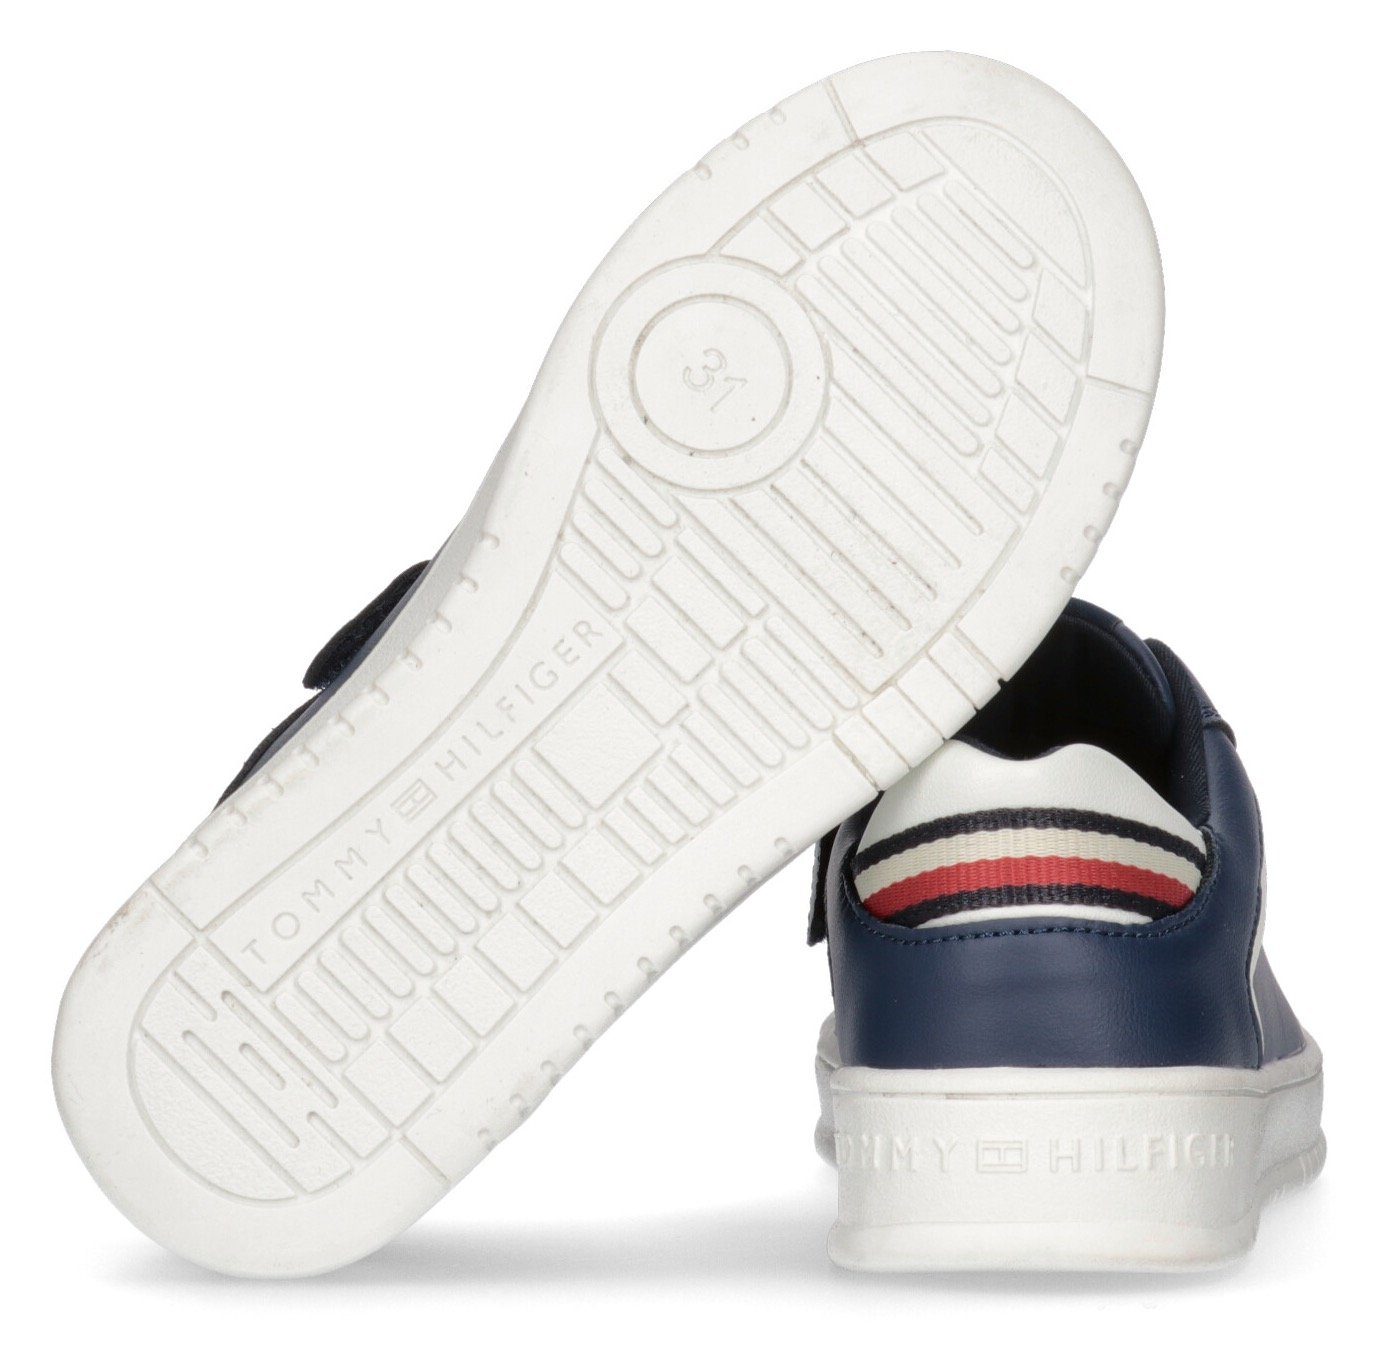 Look CUT im Hilfiger BLUE SNEAKER Retro Sneaker LOW LACE-UP Tommy